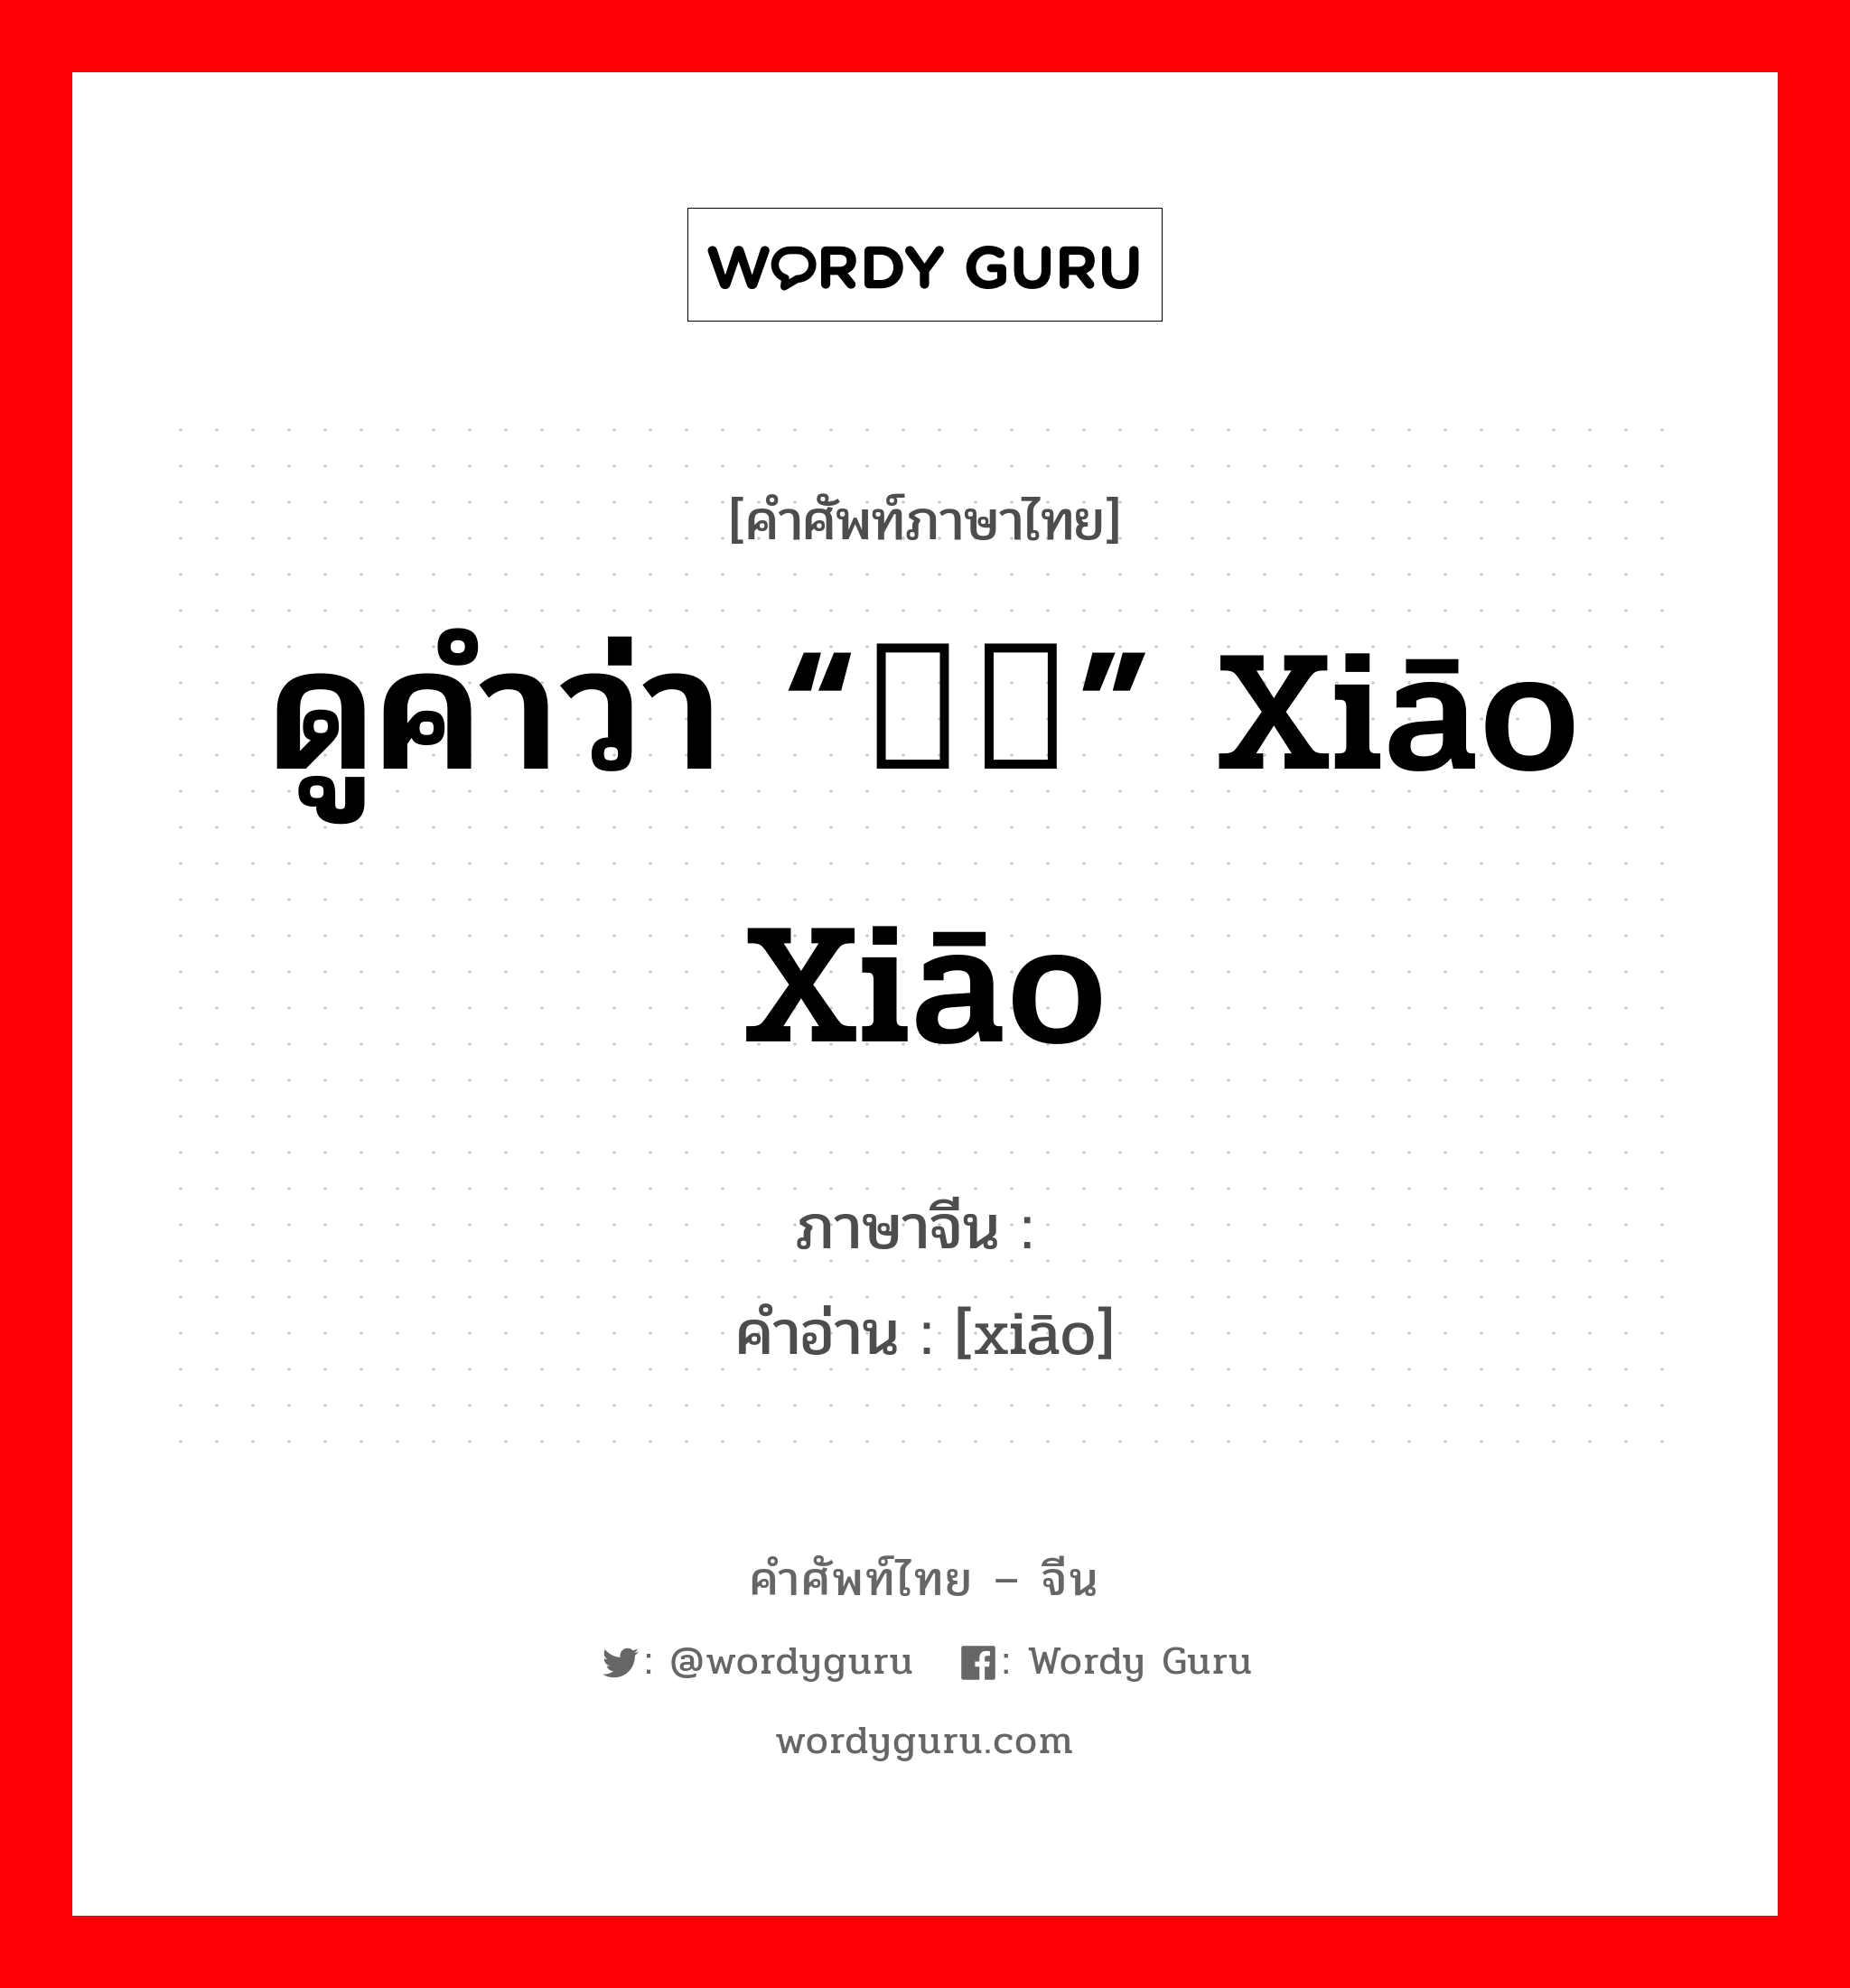 哓 ภาษาไทย?, คำศัพท์ภาษาไทย - จีน 哓 ภาษาจีน ดูคำว่า “哓哓” xiāo xiāo คำอ่าน [xiāo]